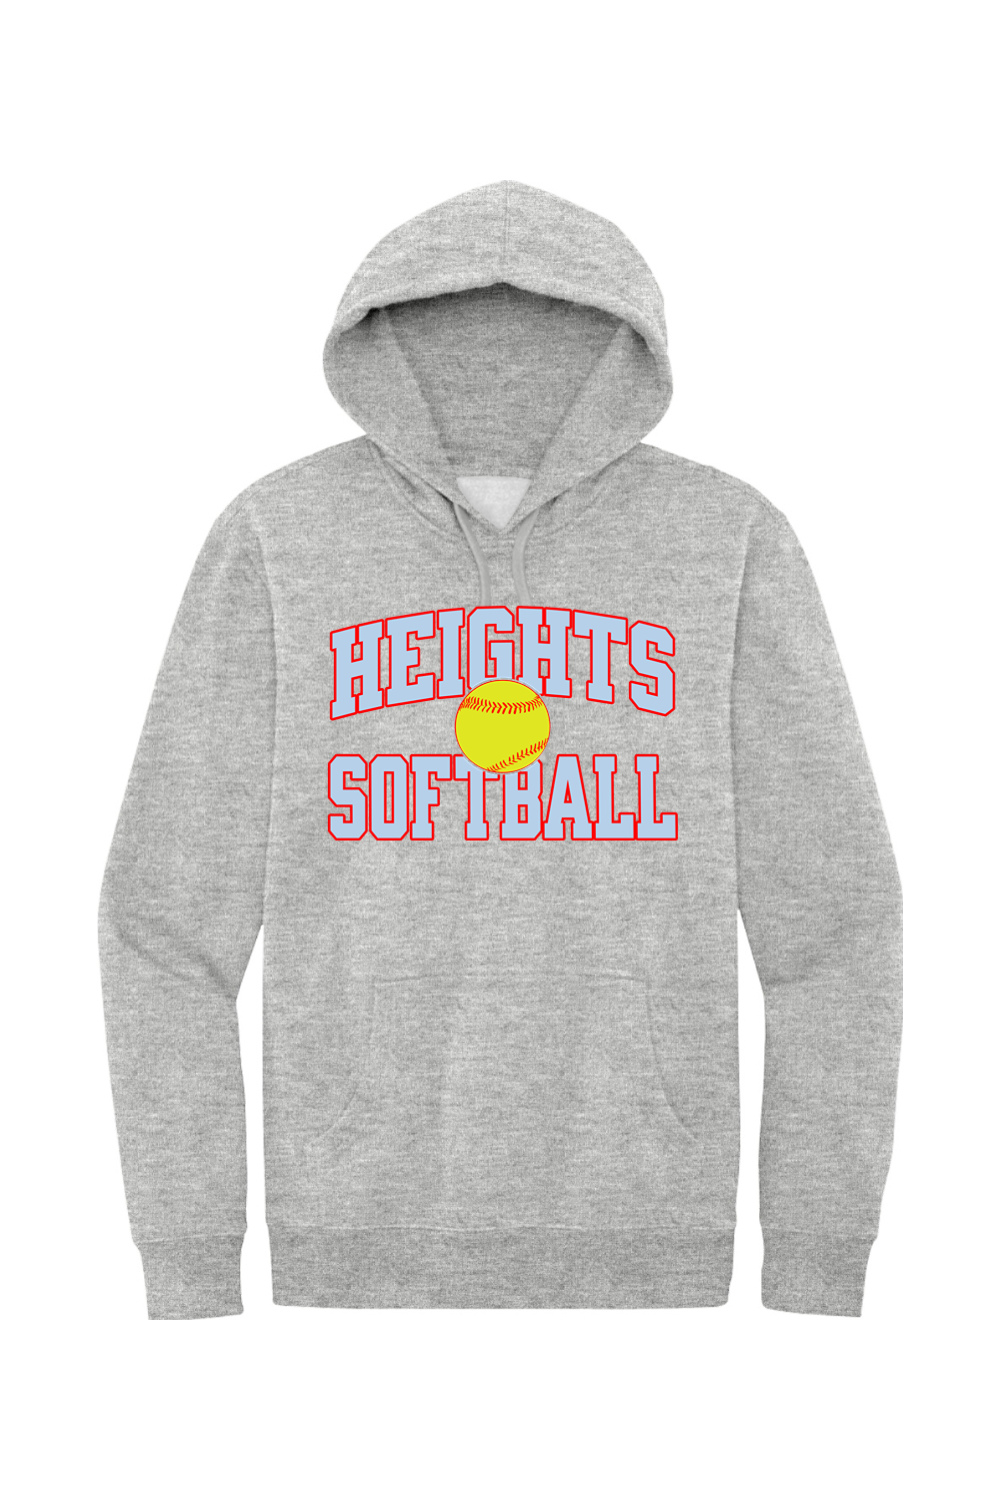 Heights Softball - Block - Fleece Hoodie - Yinzylvania